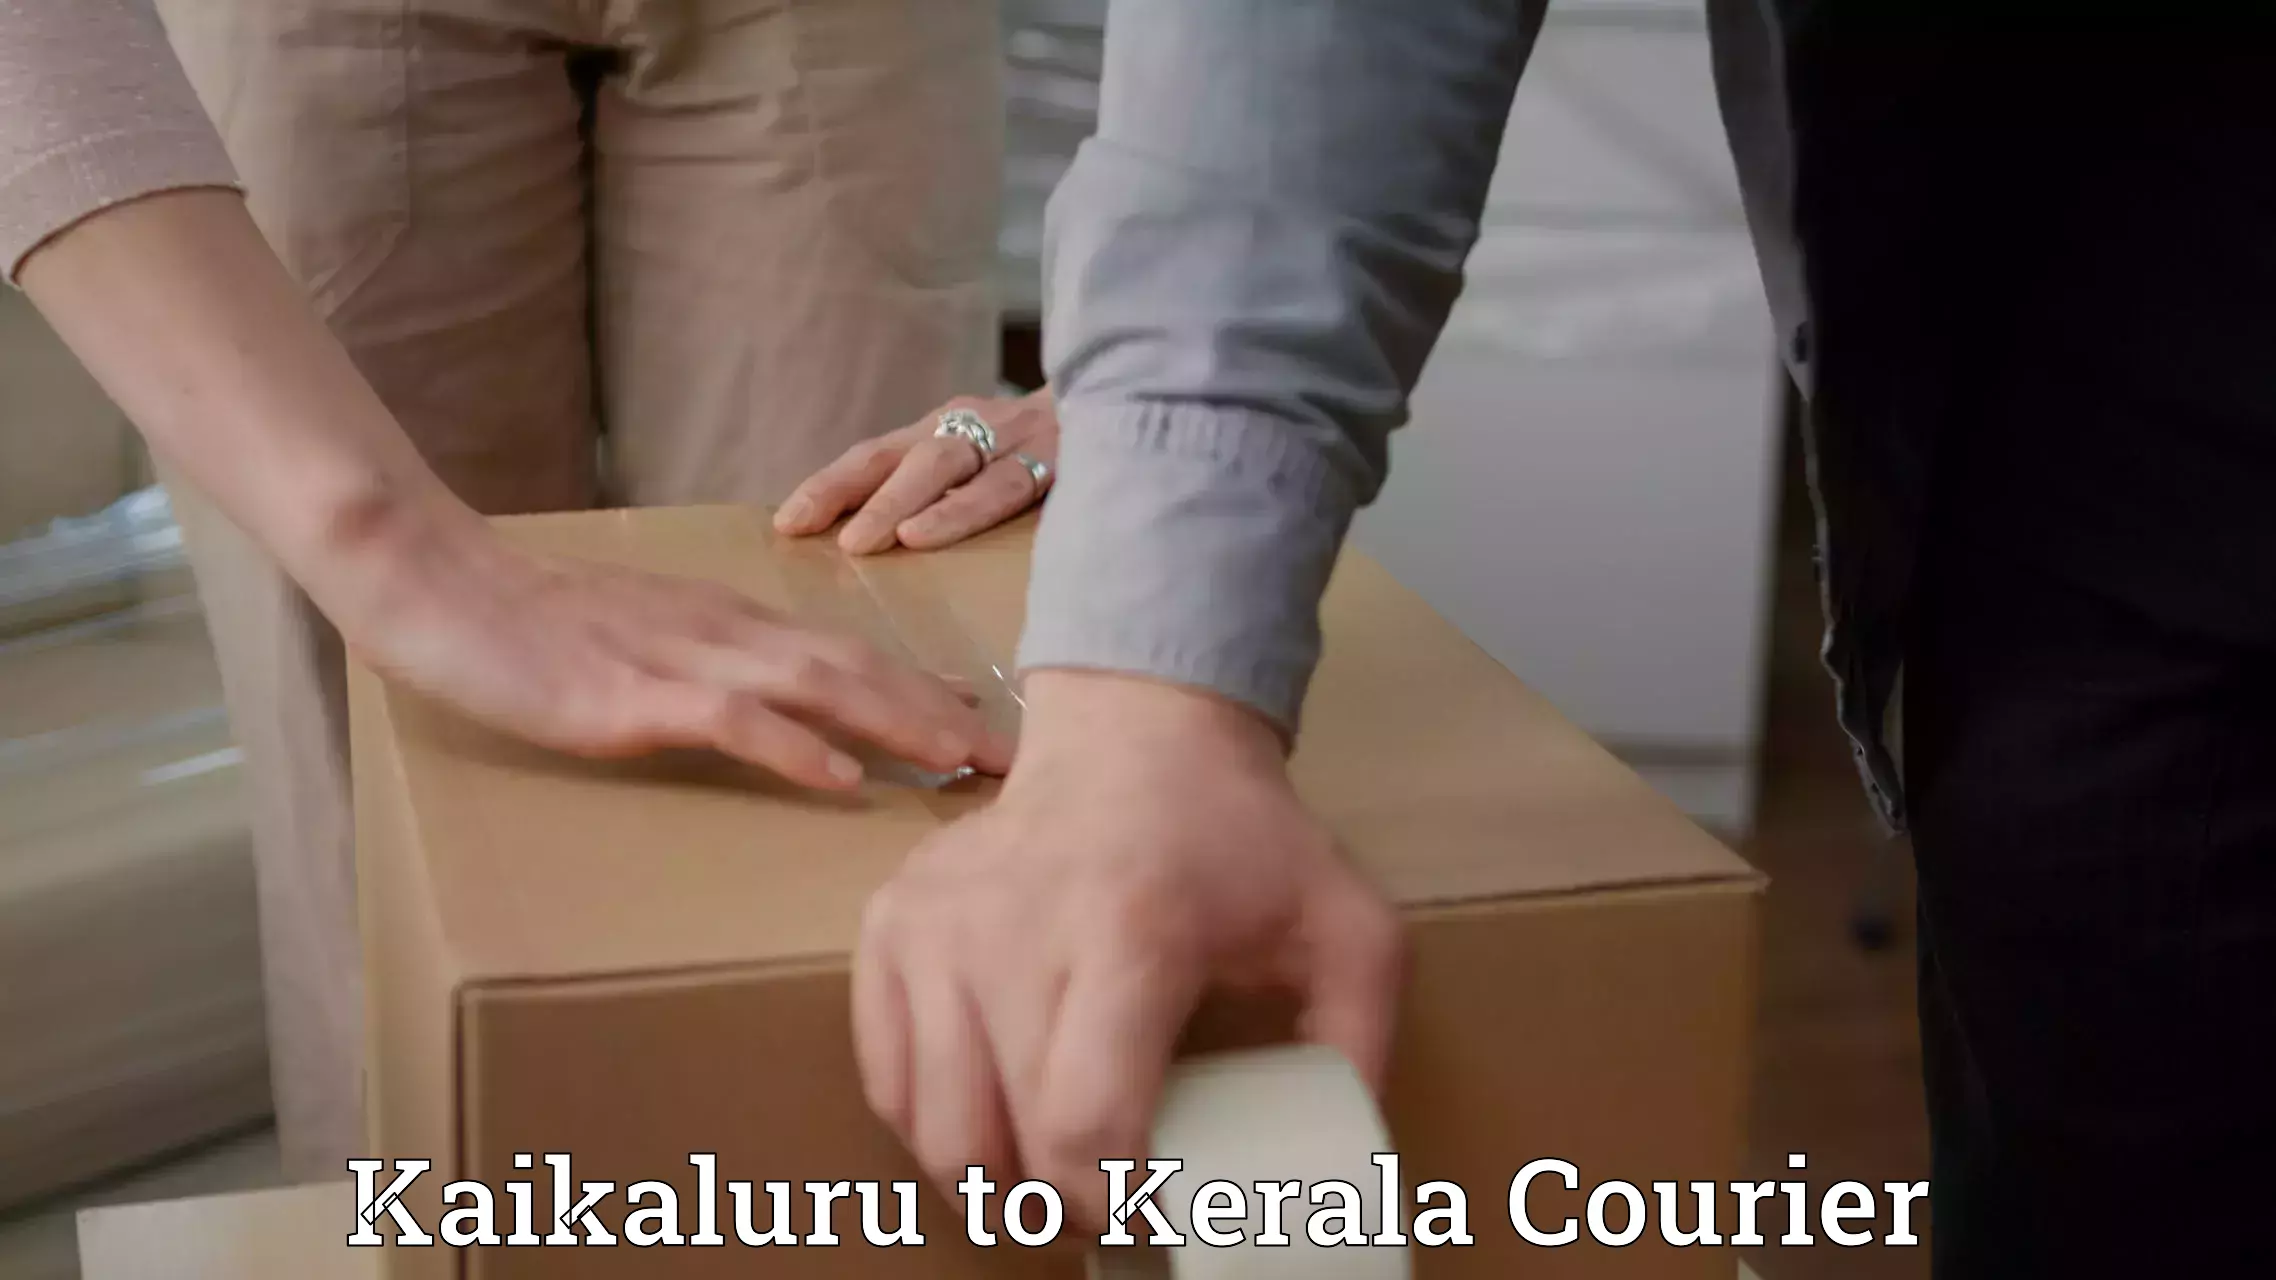 Express postal services Kaikaluru to Kerala